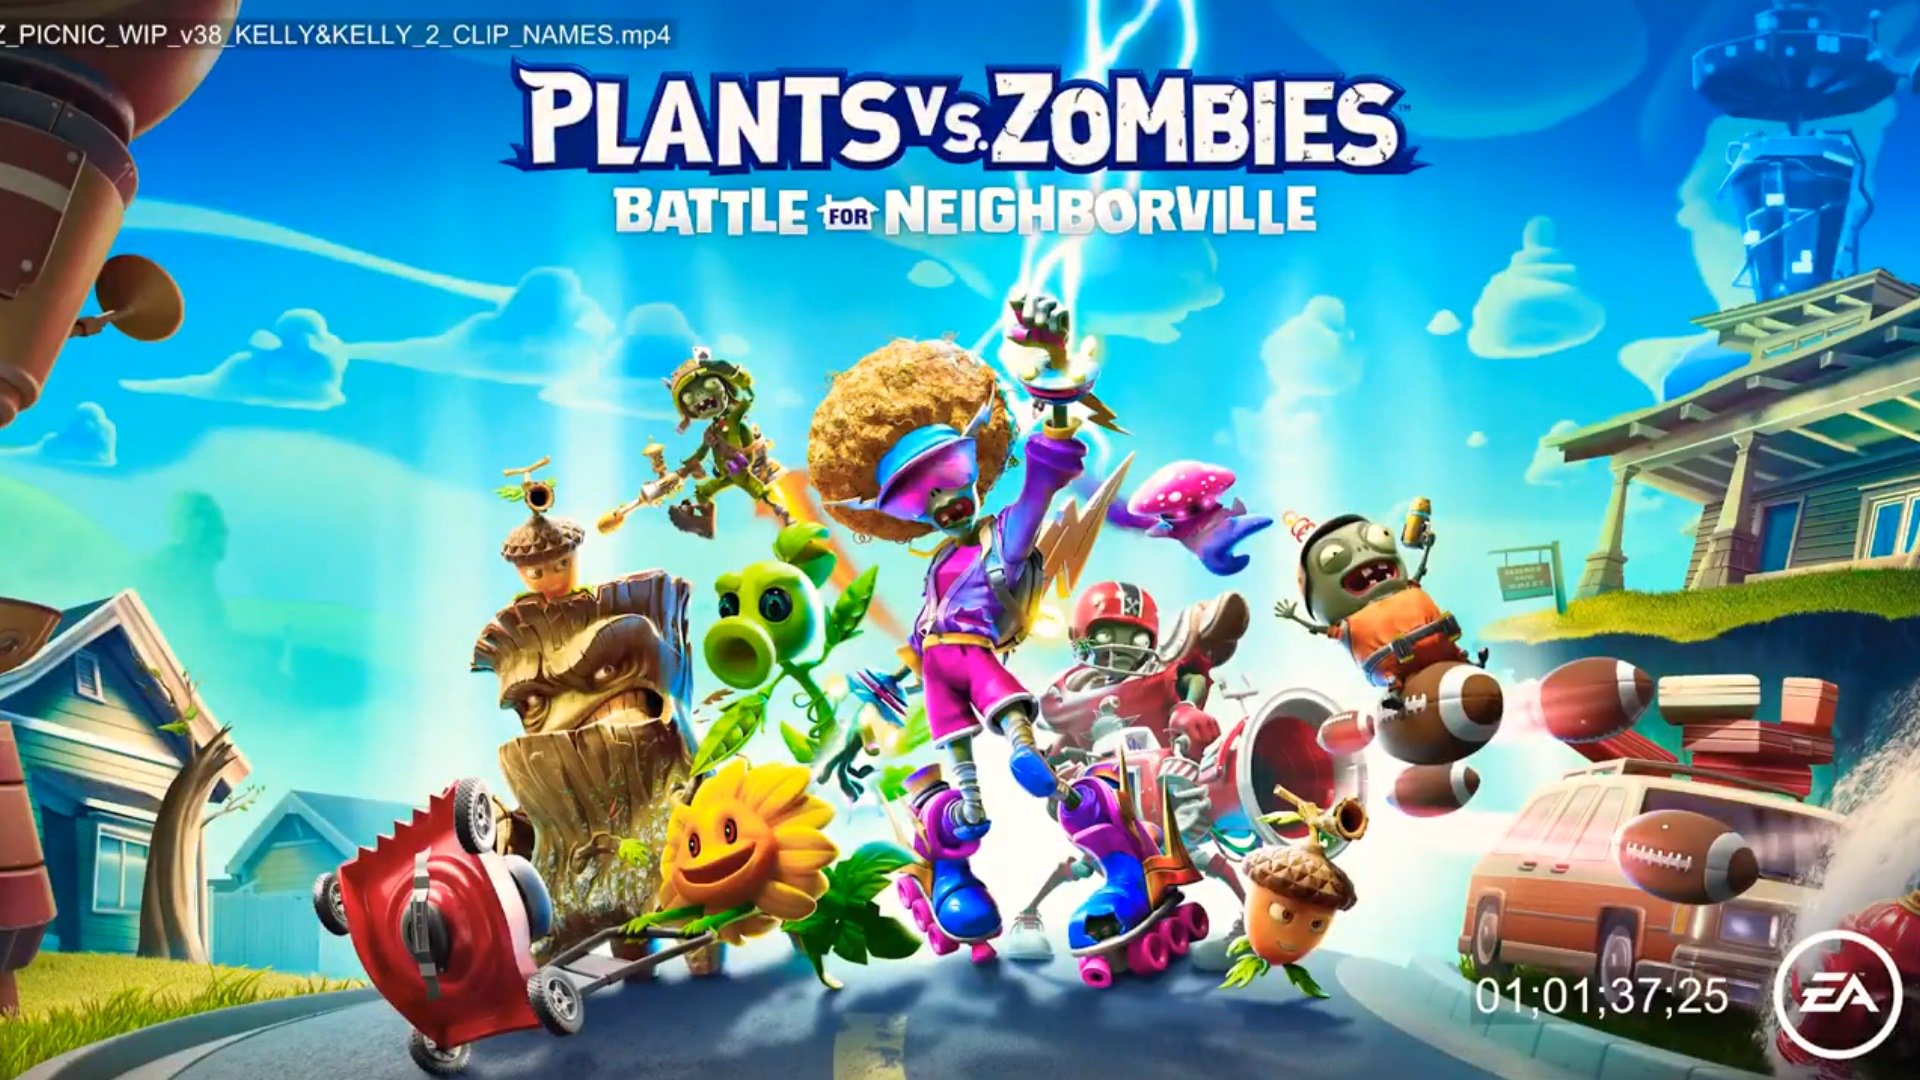 Tanaman vs Zombies: Battle for Neighborville adalah Game Popcap baru - Filtered Gameplay Trailer